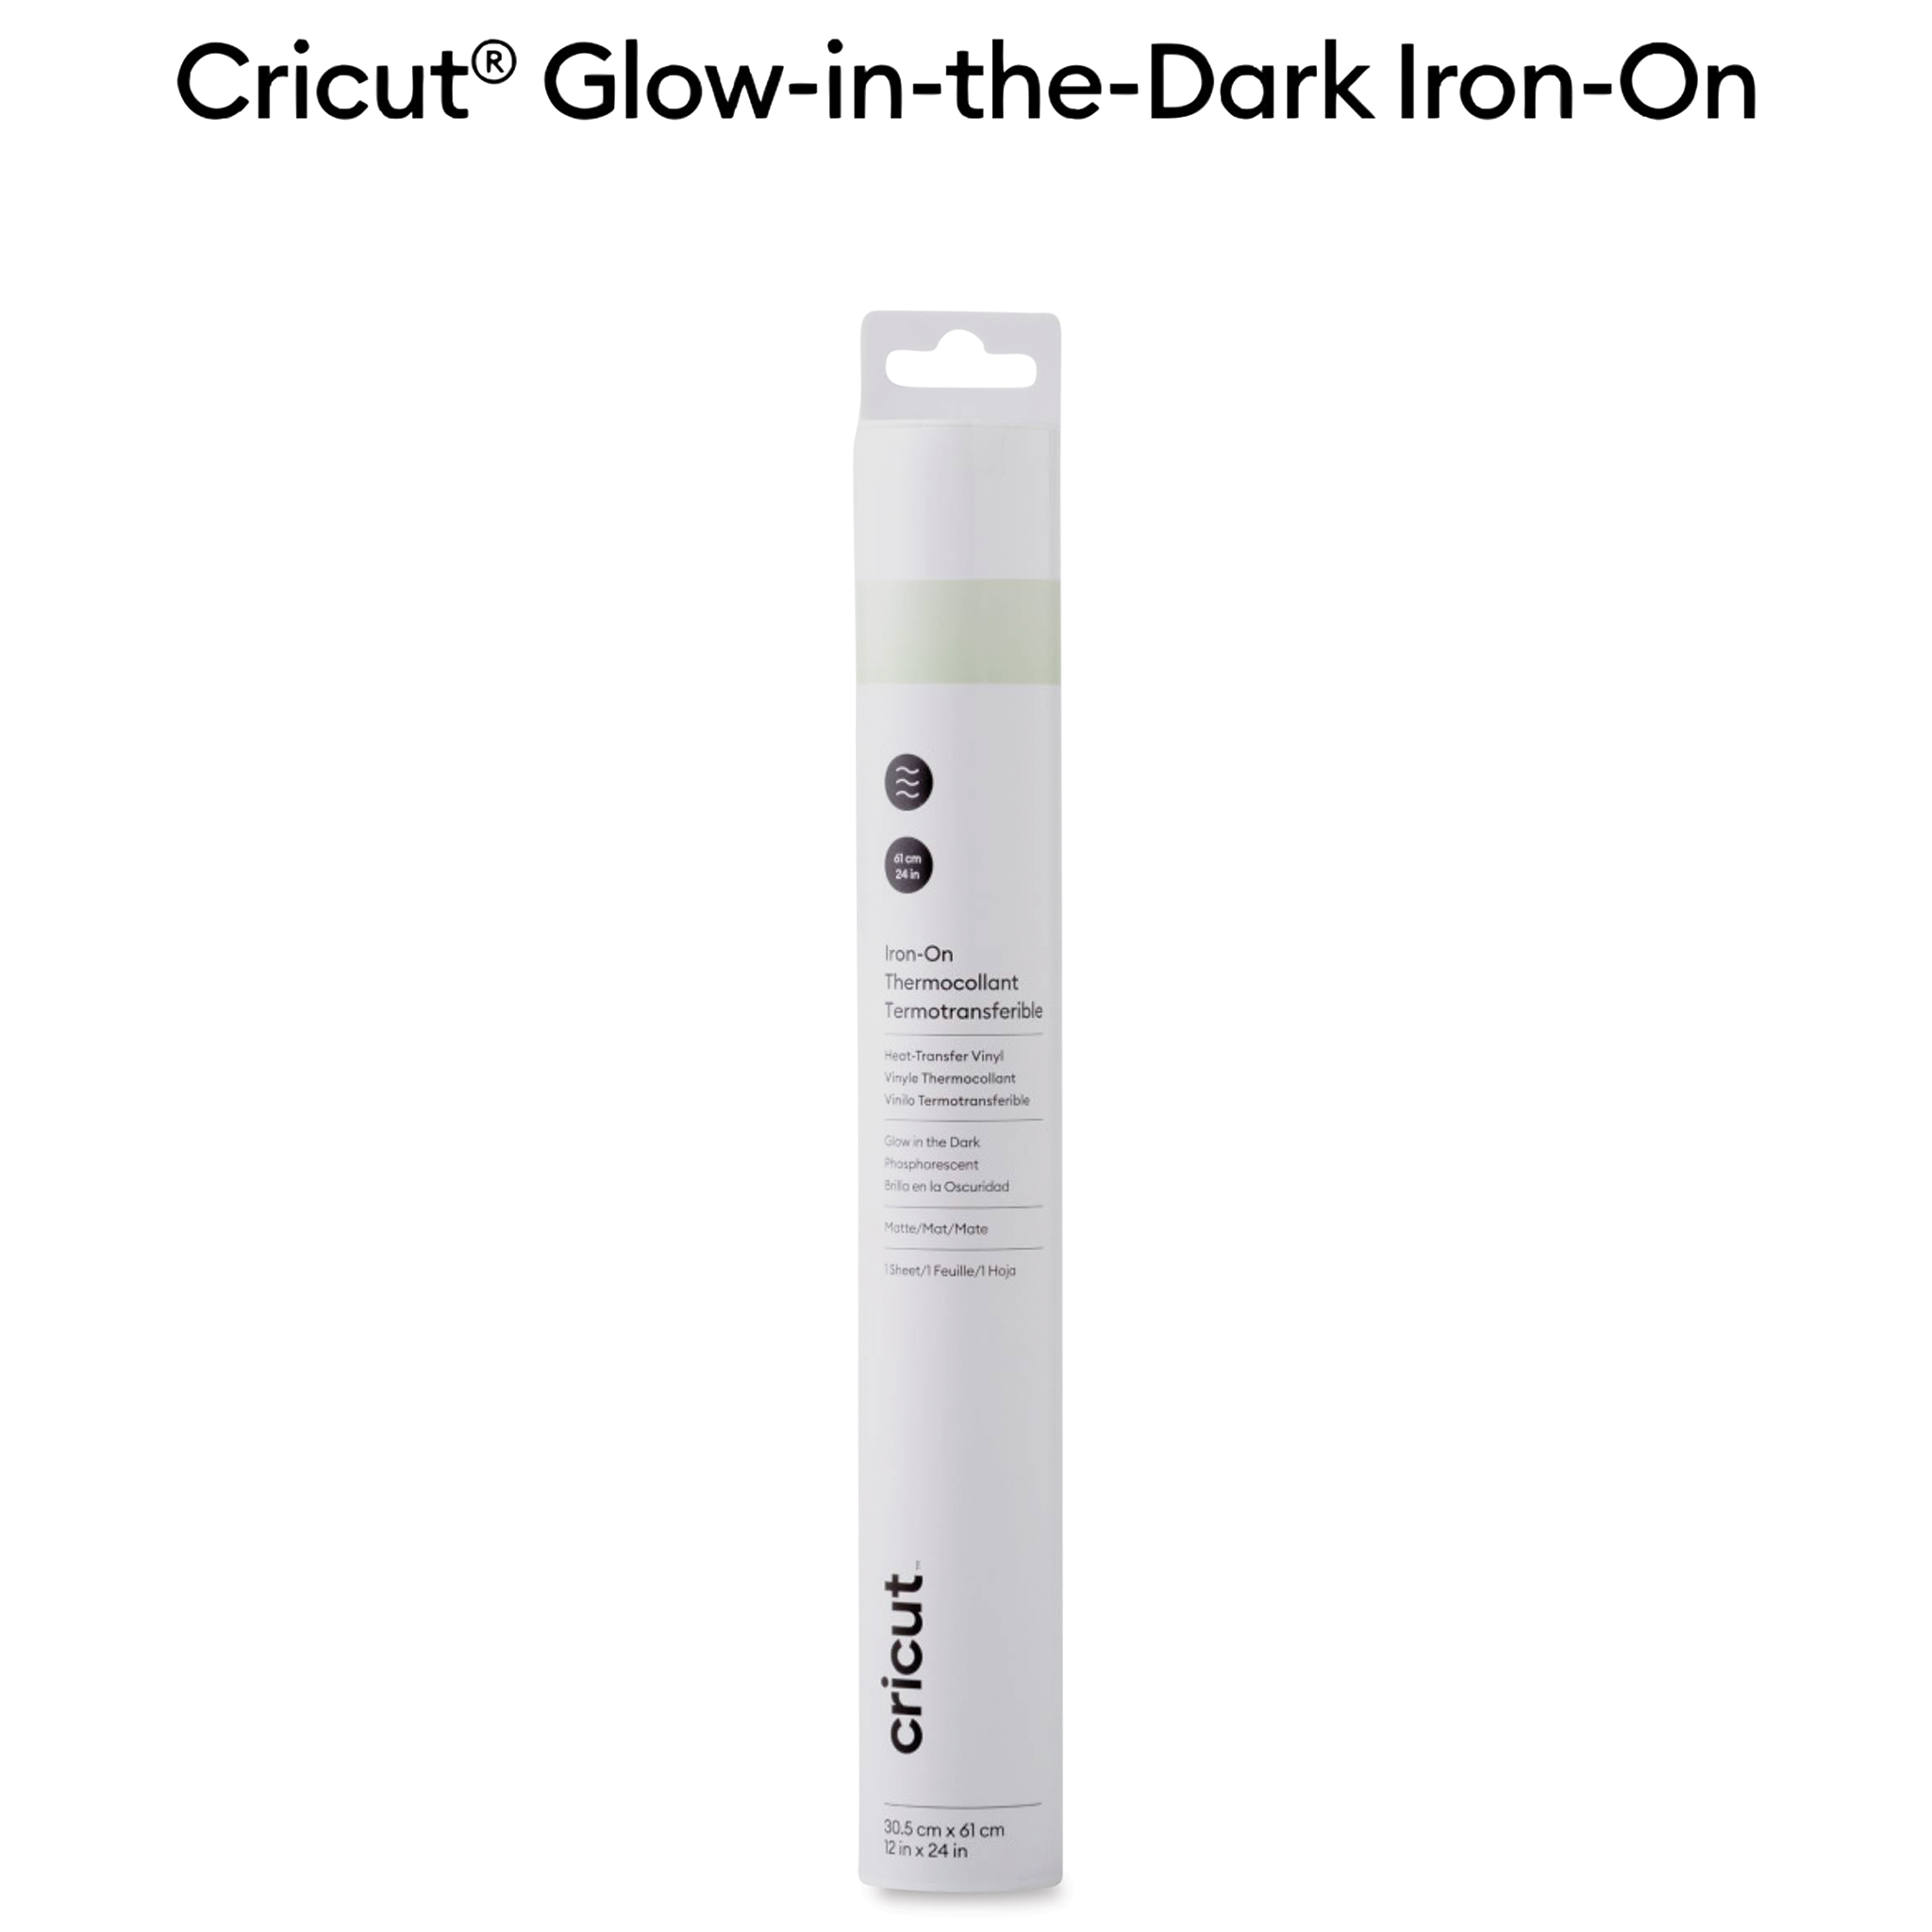 Cricut Glow-In-The-Dark Iron-On Heat Transfer Vinyl